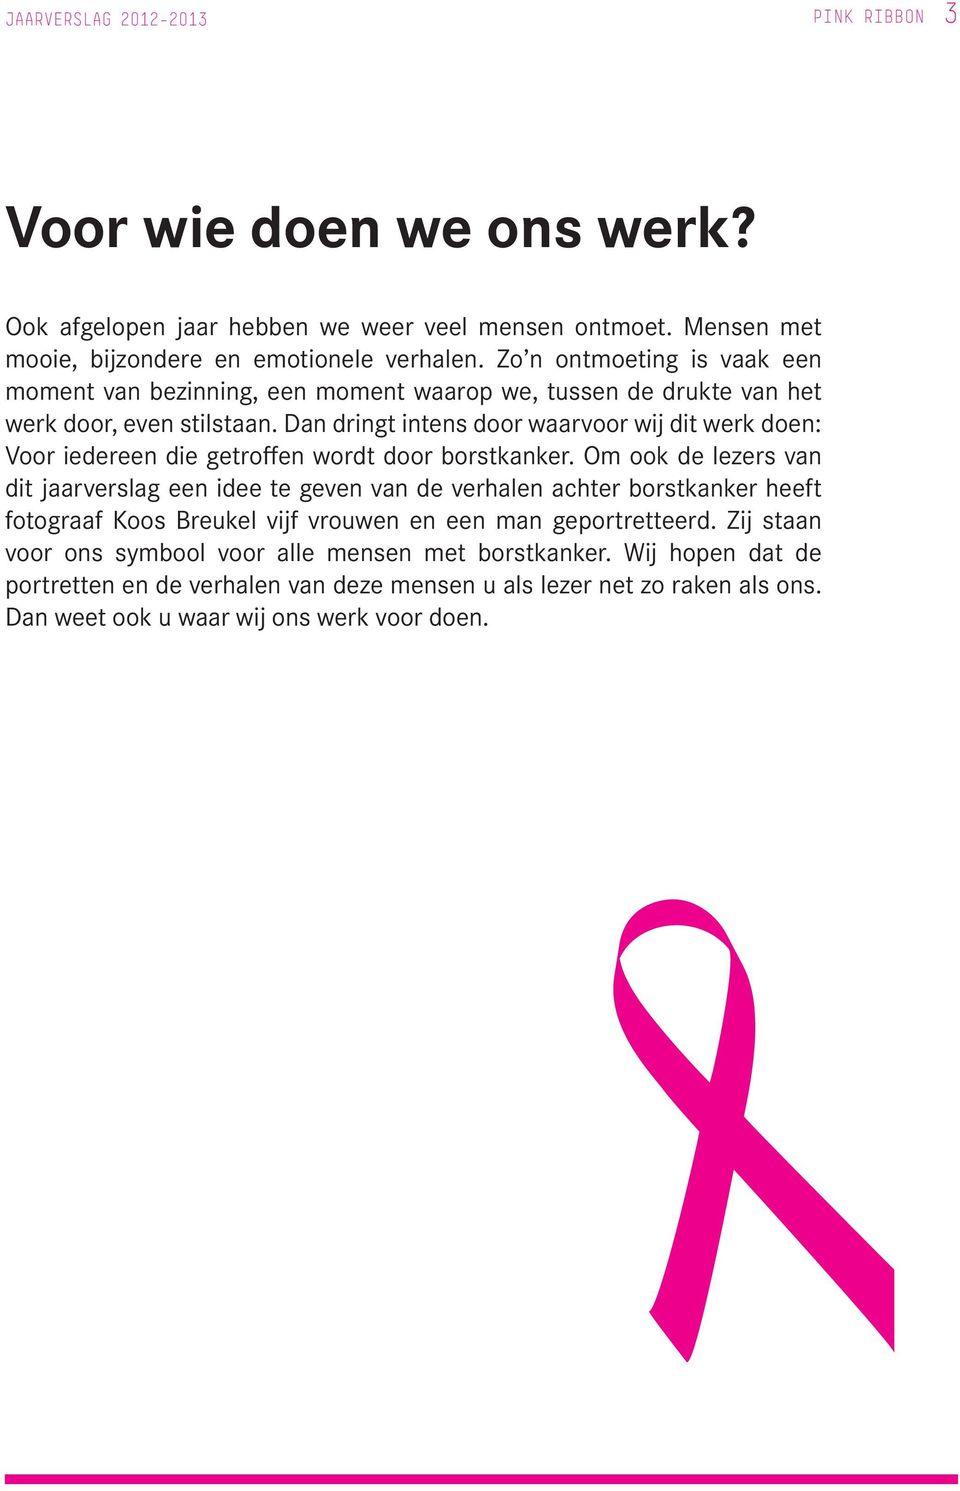 Dan dringt intens door waarvoor wij dit werk doen: Voor iedereen die getroffen wordt door borstkanker.